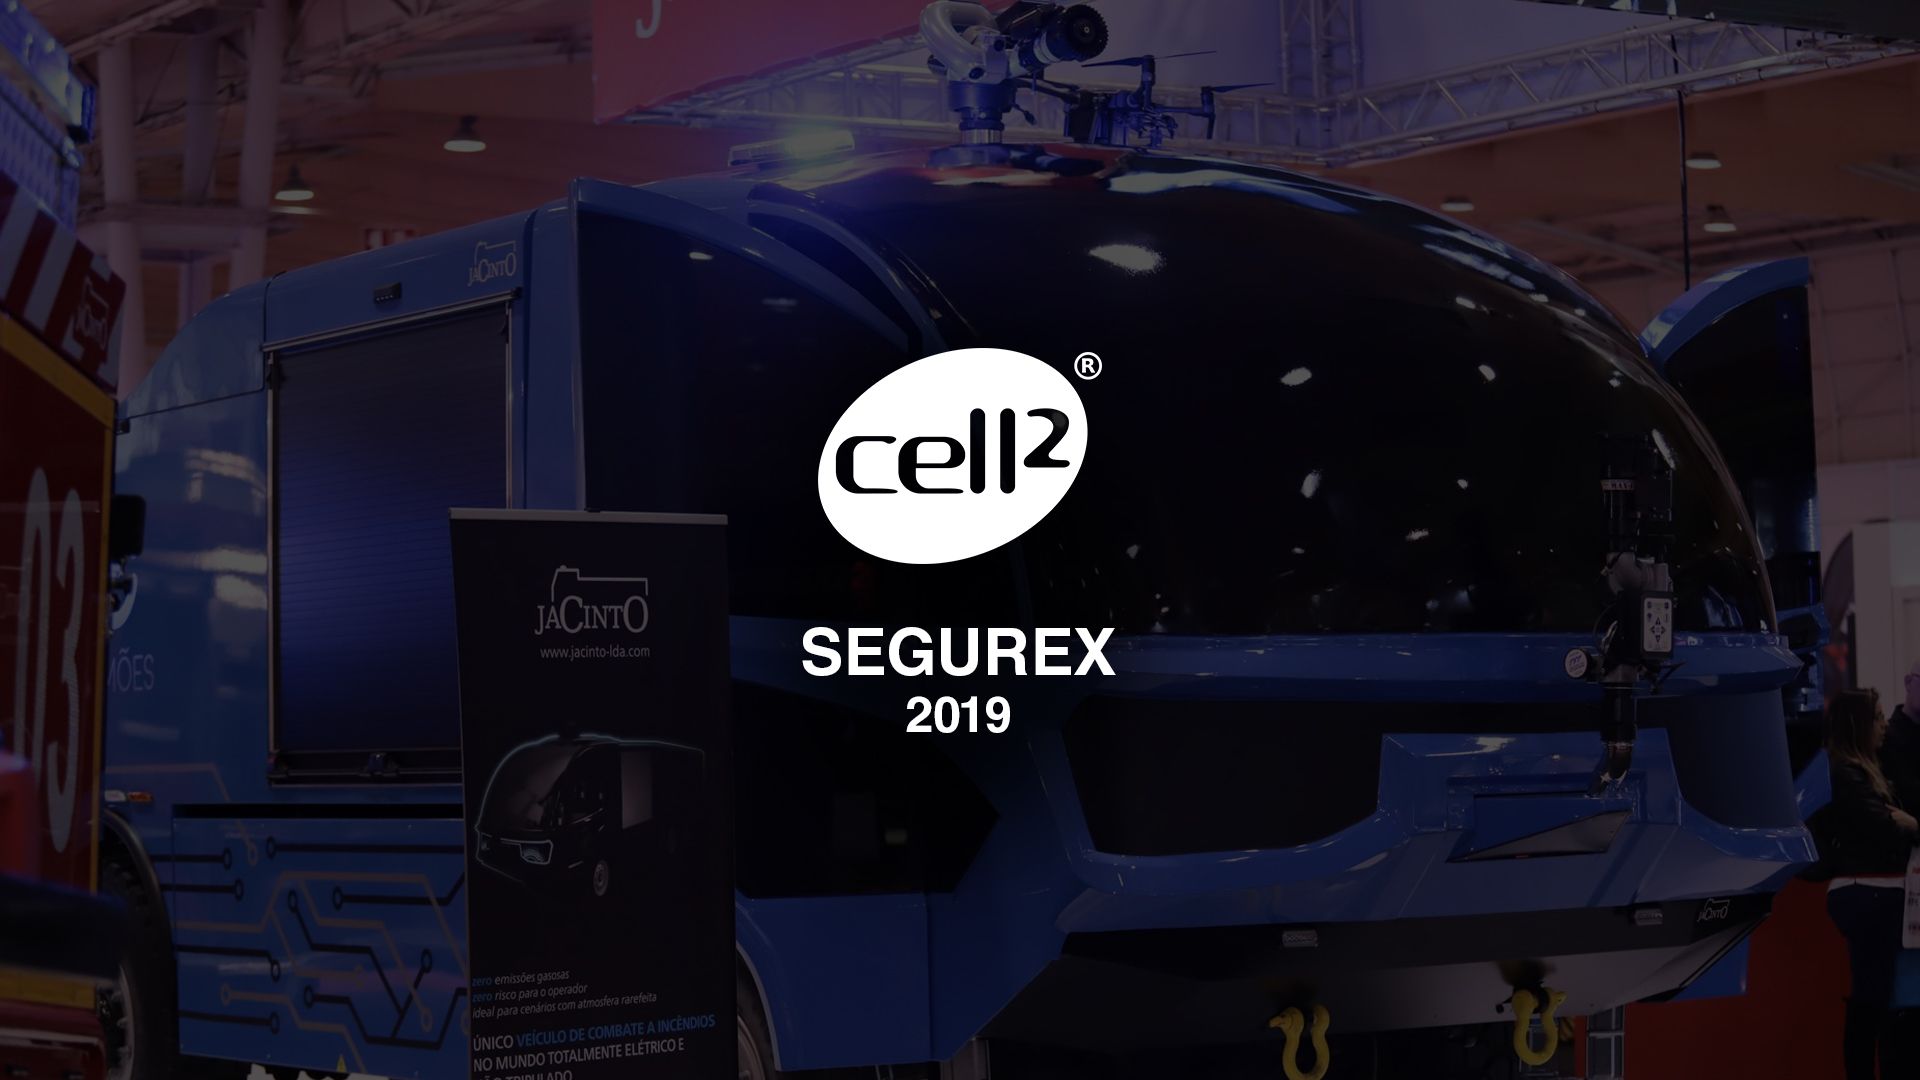 Cell2 - SEGUREX 2019 - International Safety Exhibition